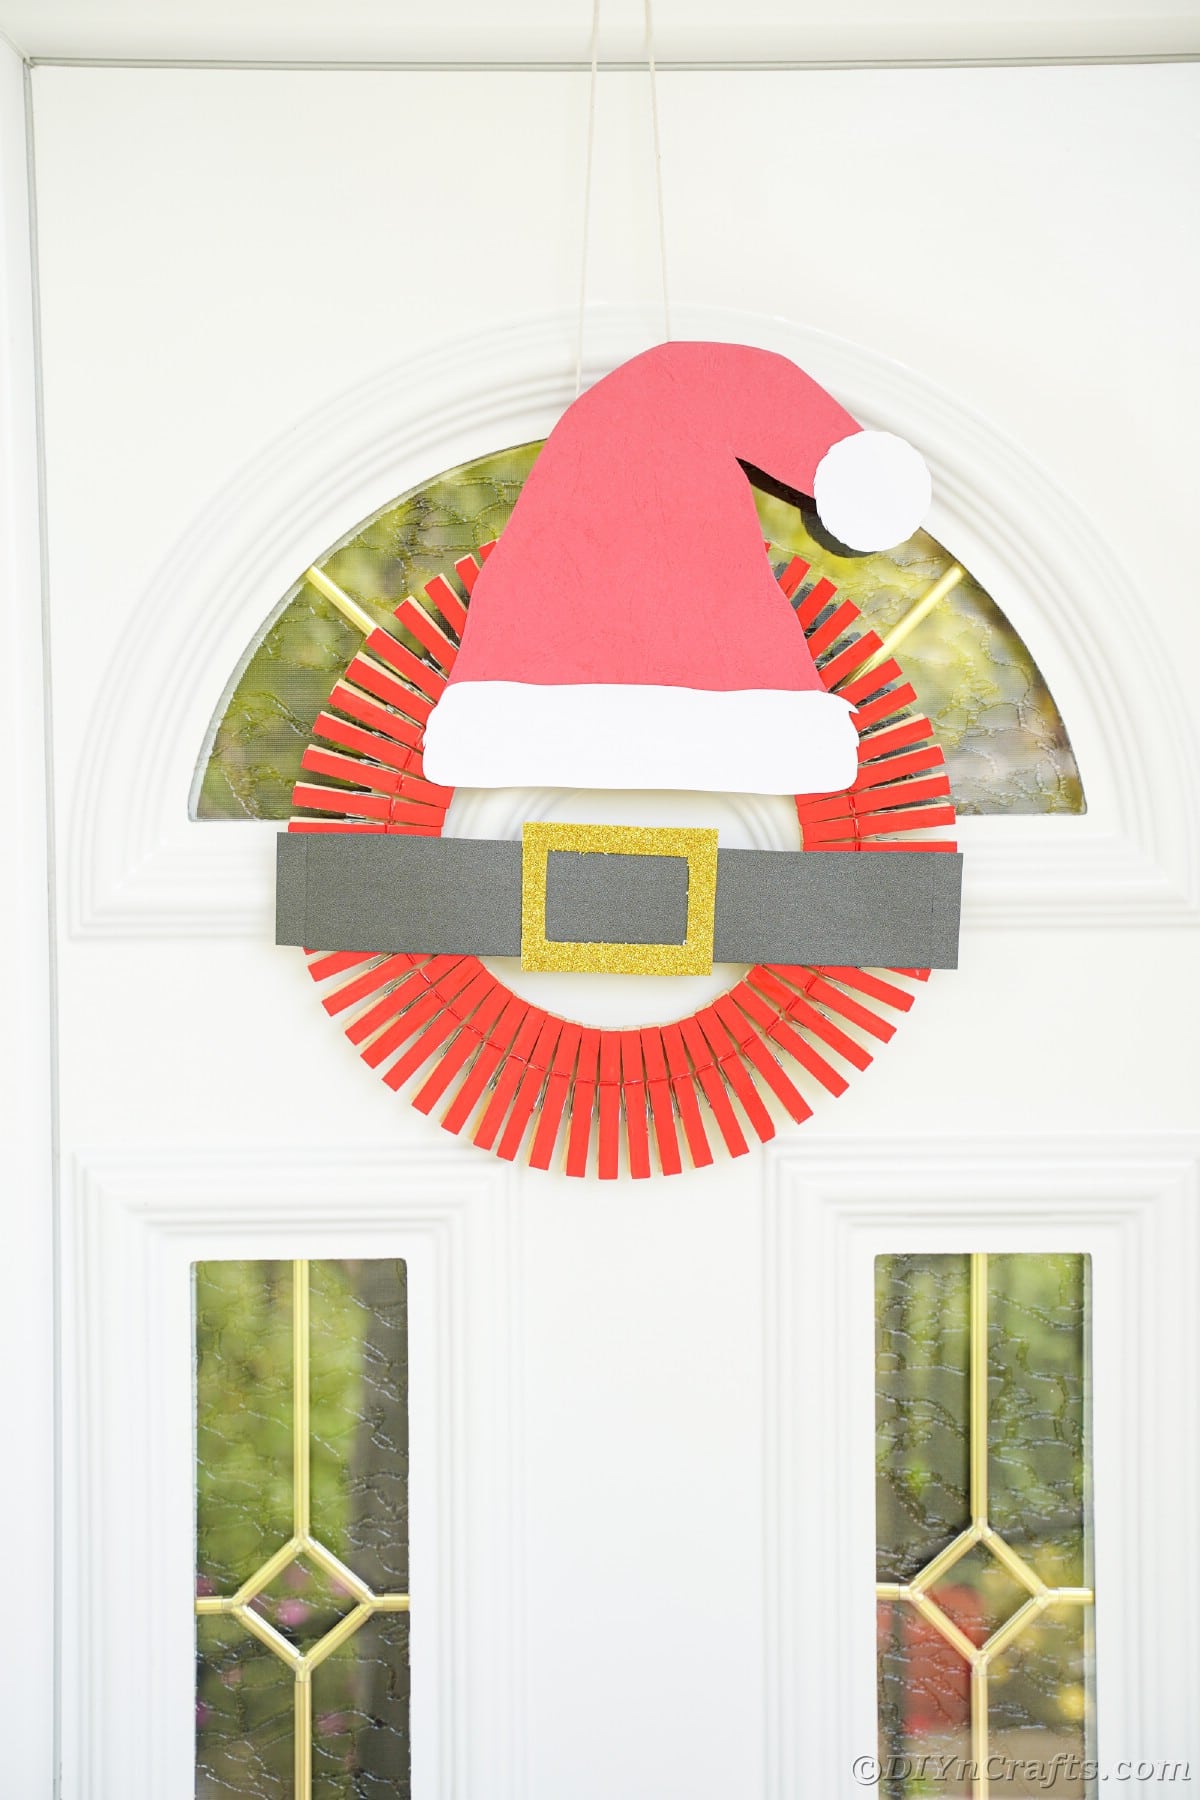 božičkov venec visi na belih vratih s steklenimi ploščami